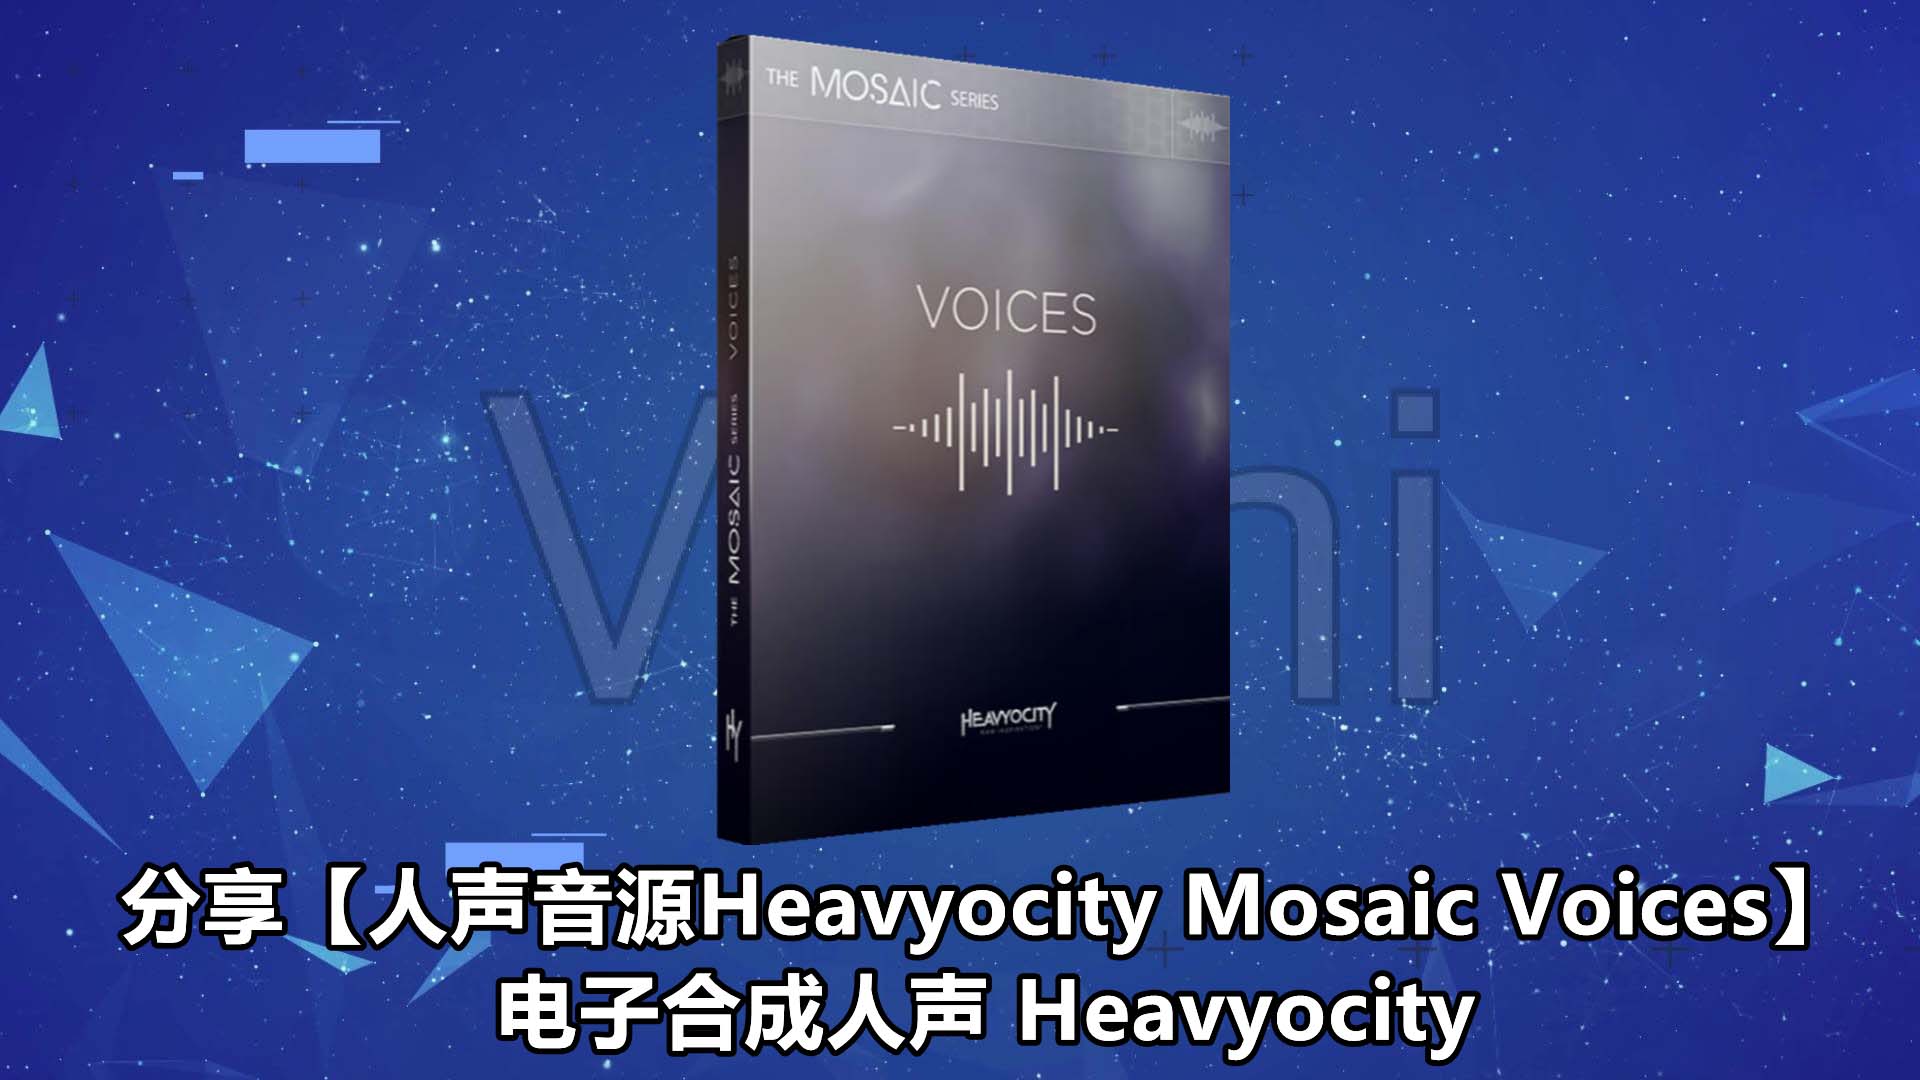 【人声音源Heavyocity Mosaic Voices】电子合成人声 Heavyocity